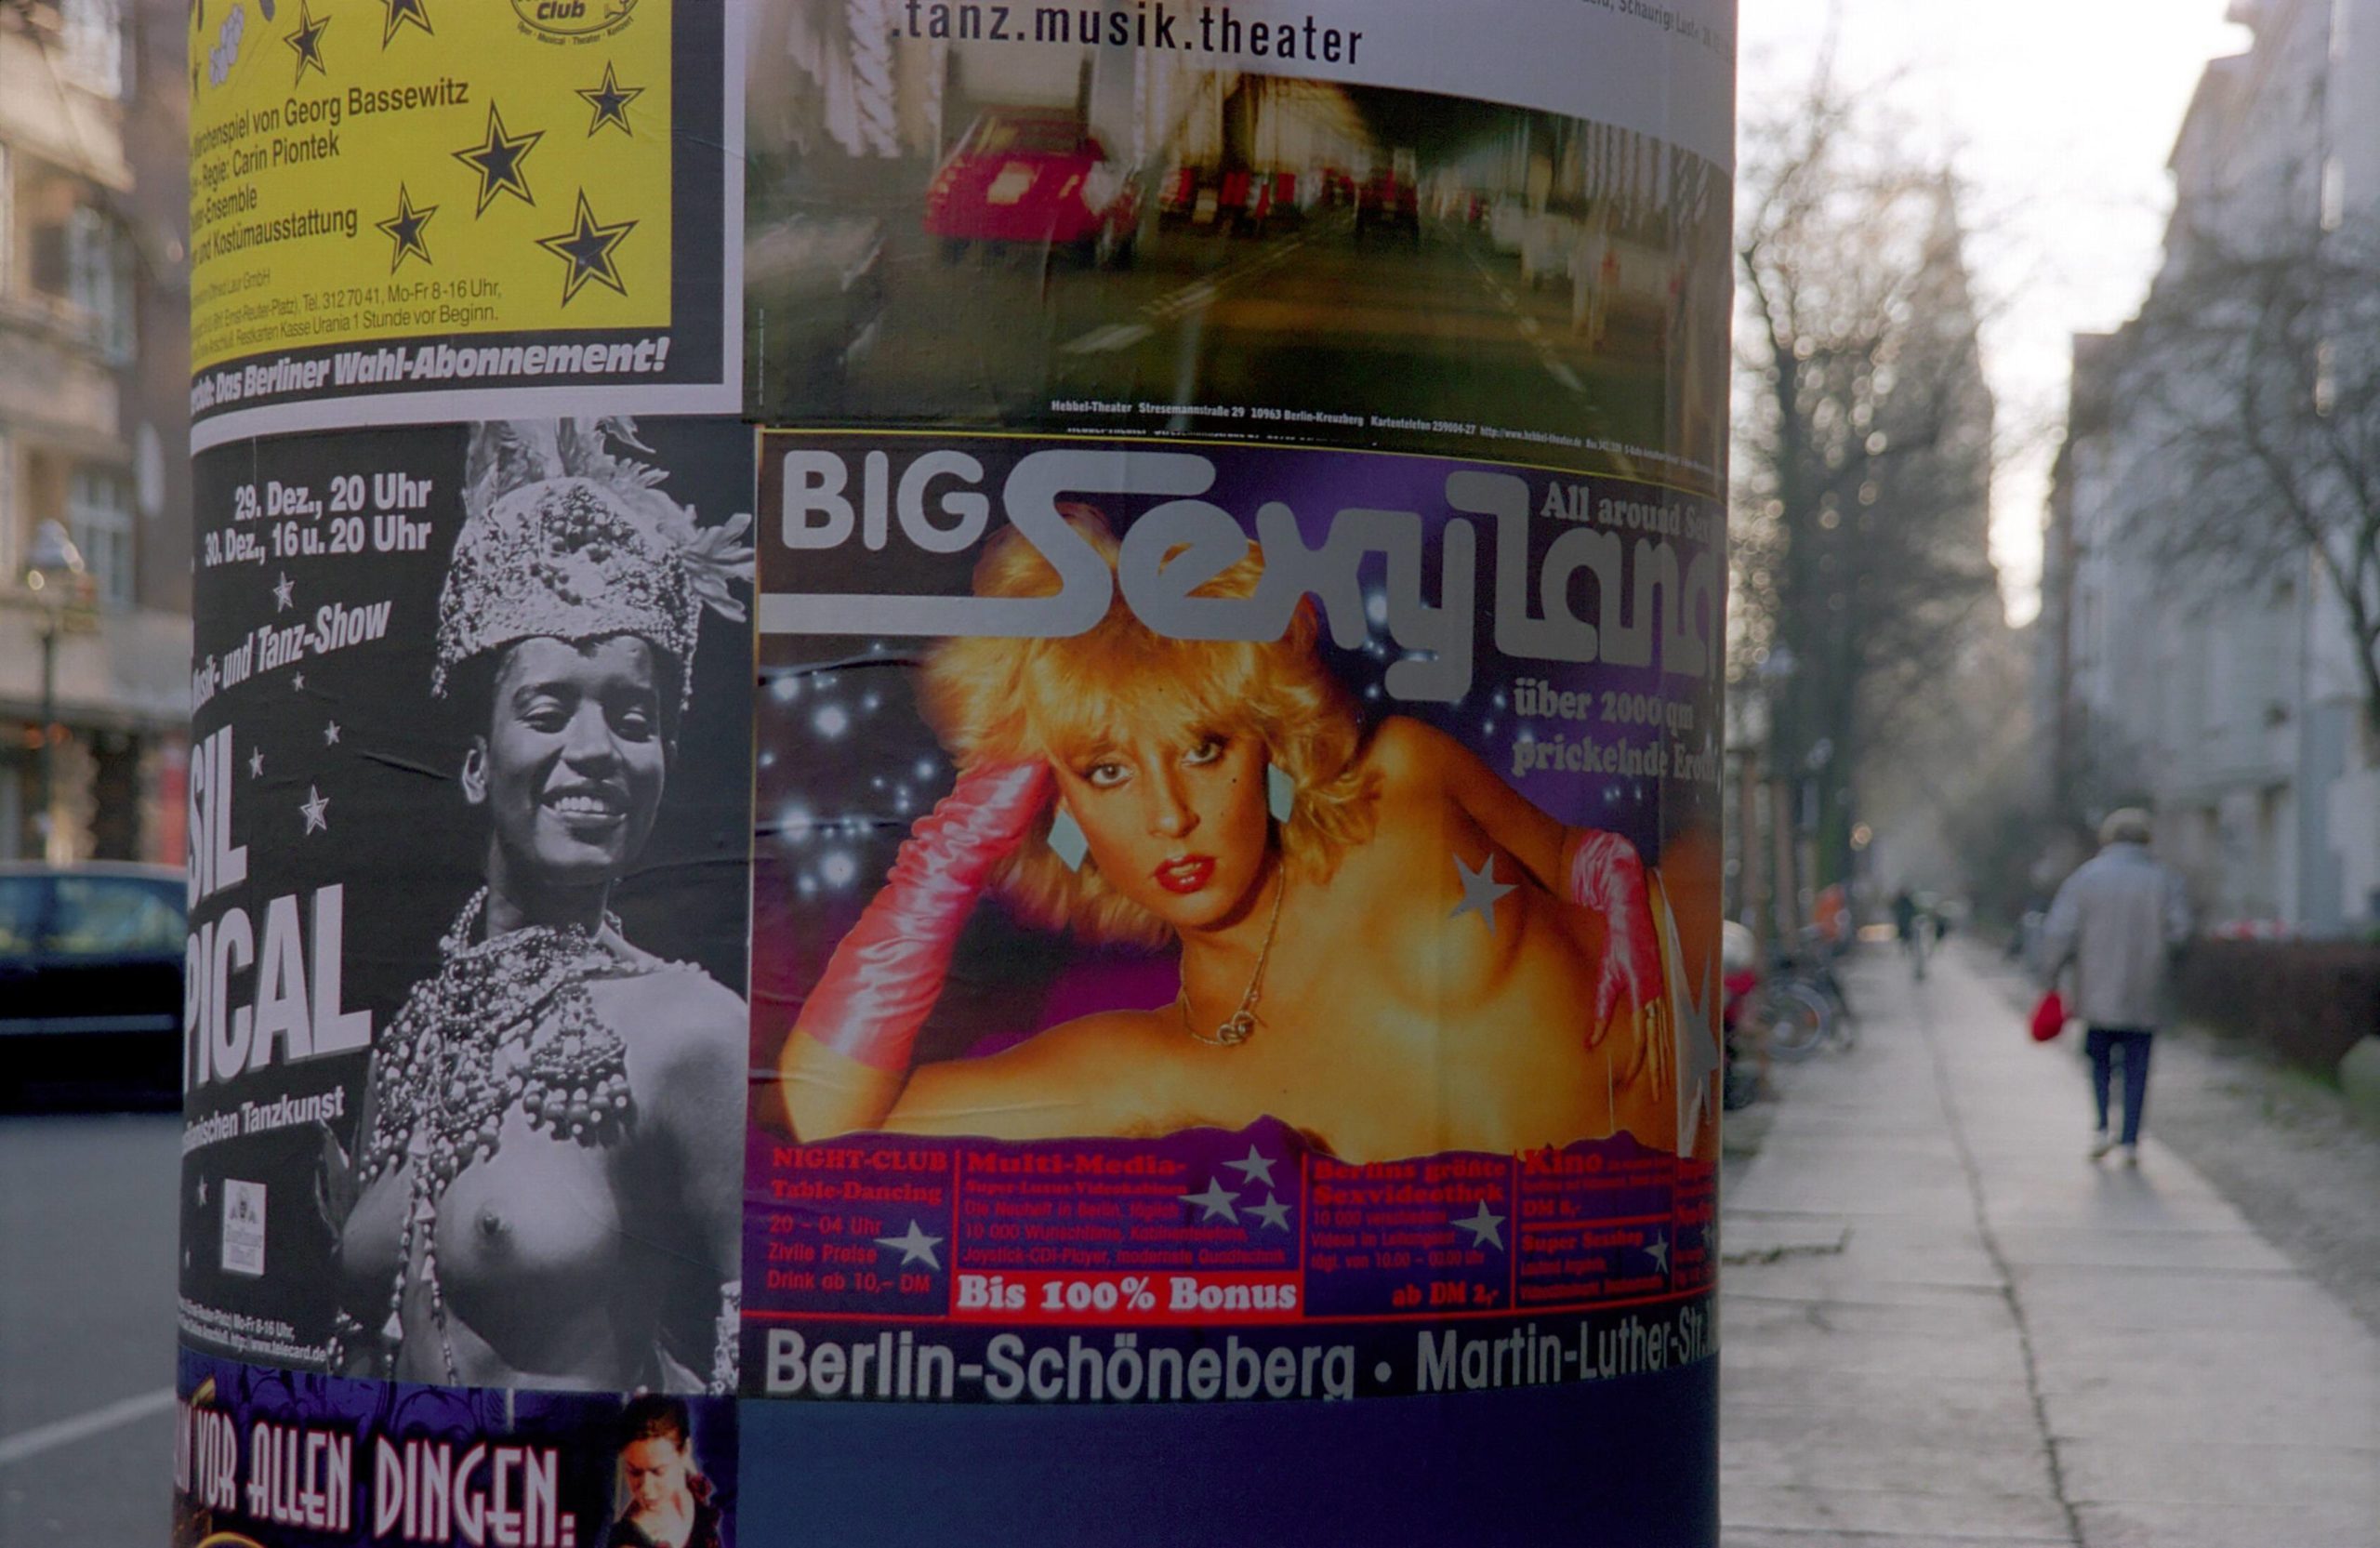 Werbung für das Big Sexyland, 1990er-Jahre. Foto: Imago/Lem